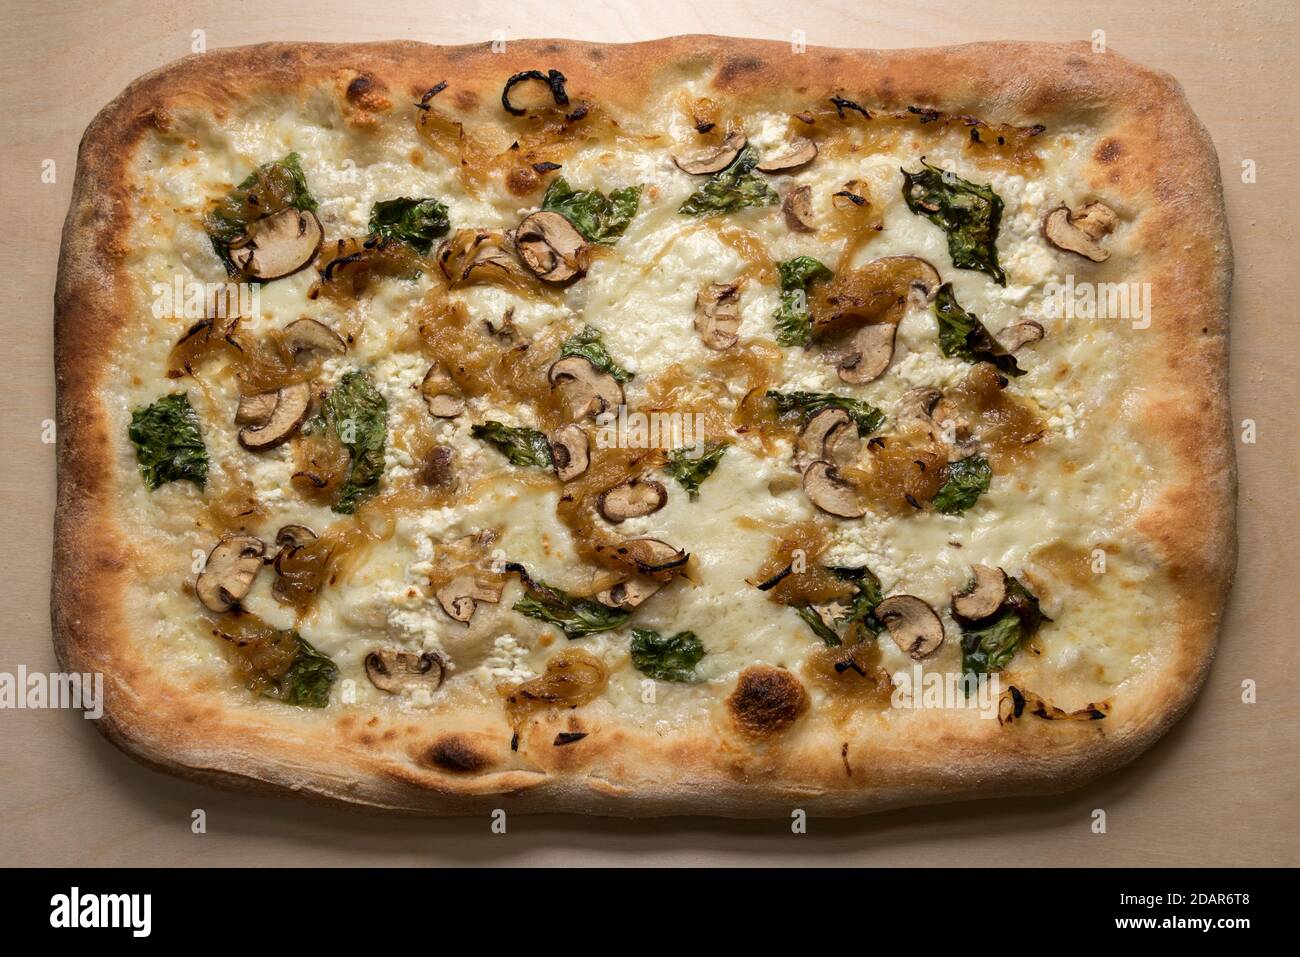 Pizza italienne carrée aux champignons, mozzarella, oignons cuits et feuilles de basilic, vue de dessus sur fond de bois avant découpe Banque D'Images